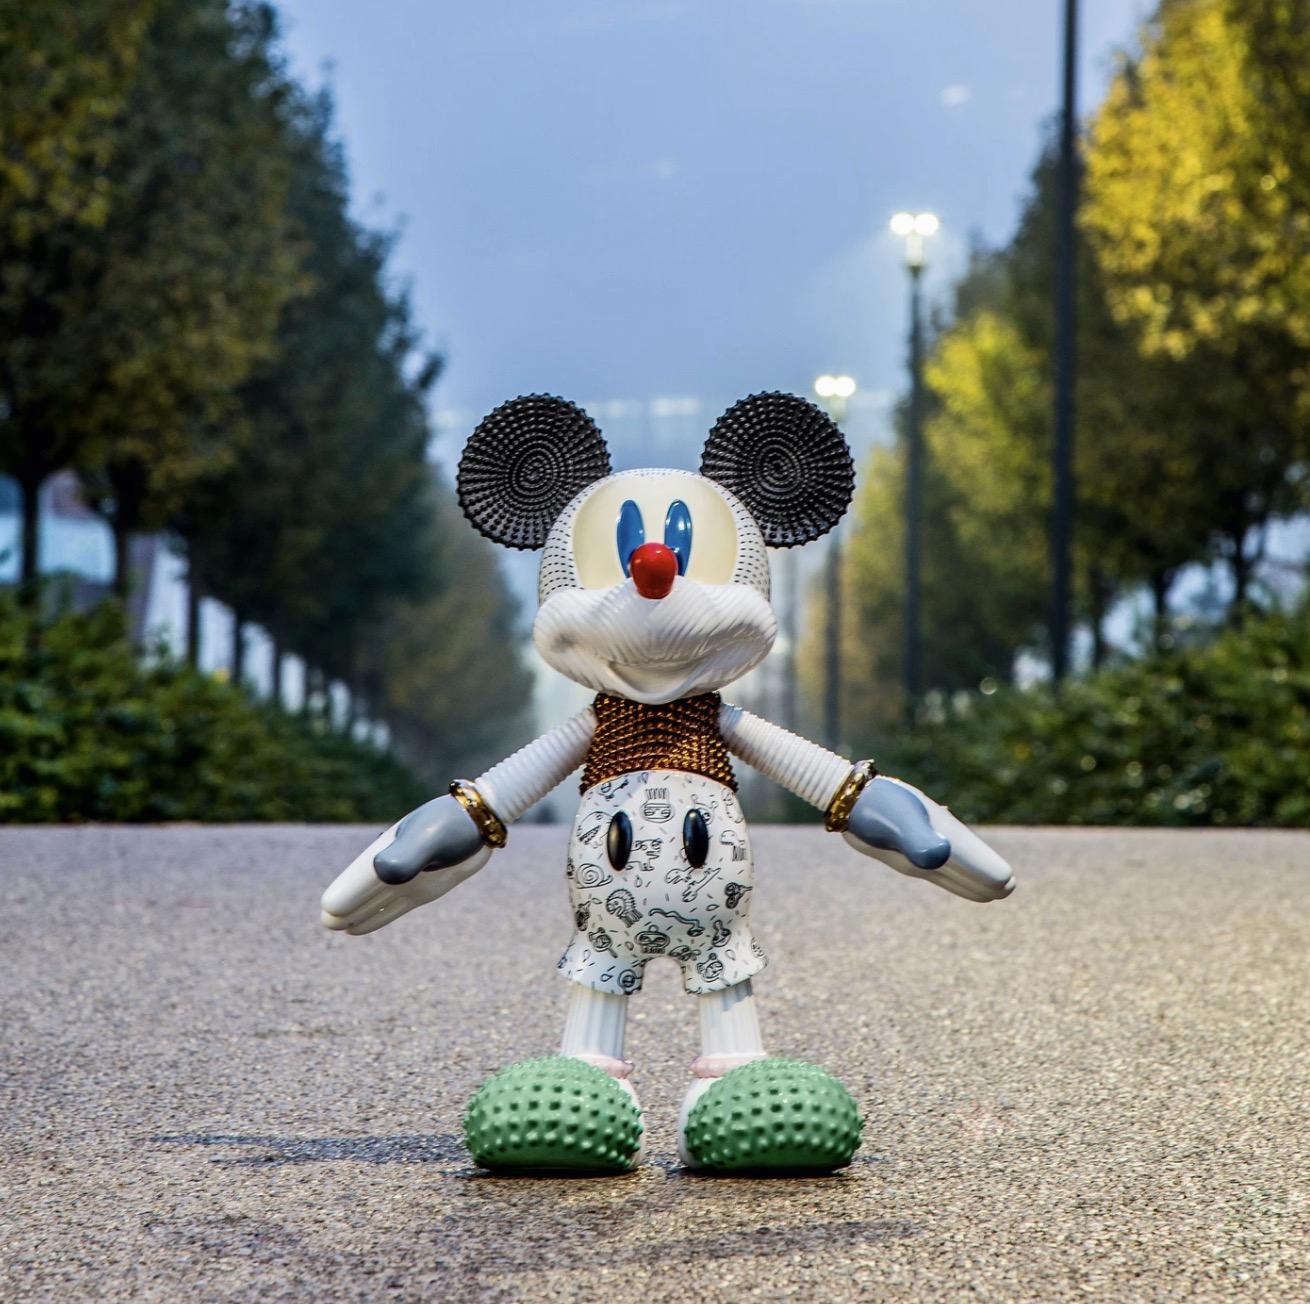 Mickey Forever Young conçu par Elena Salmistraro pour Bosa est une sculpture en céramique, née de la collaboration entre Bosa et Disney pour célébrer les 90 ans de Mickey Mouse.

Sculpture de Mickey Mouse en édition limitée, entièrement réalisée à